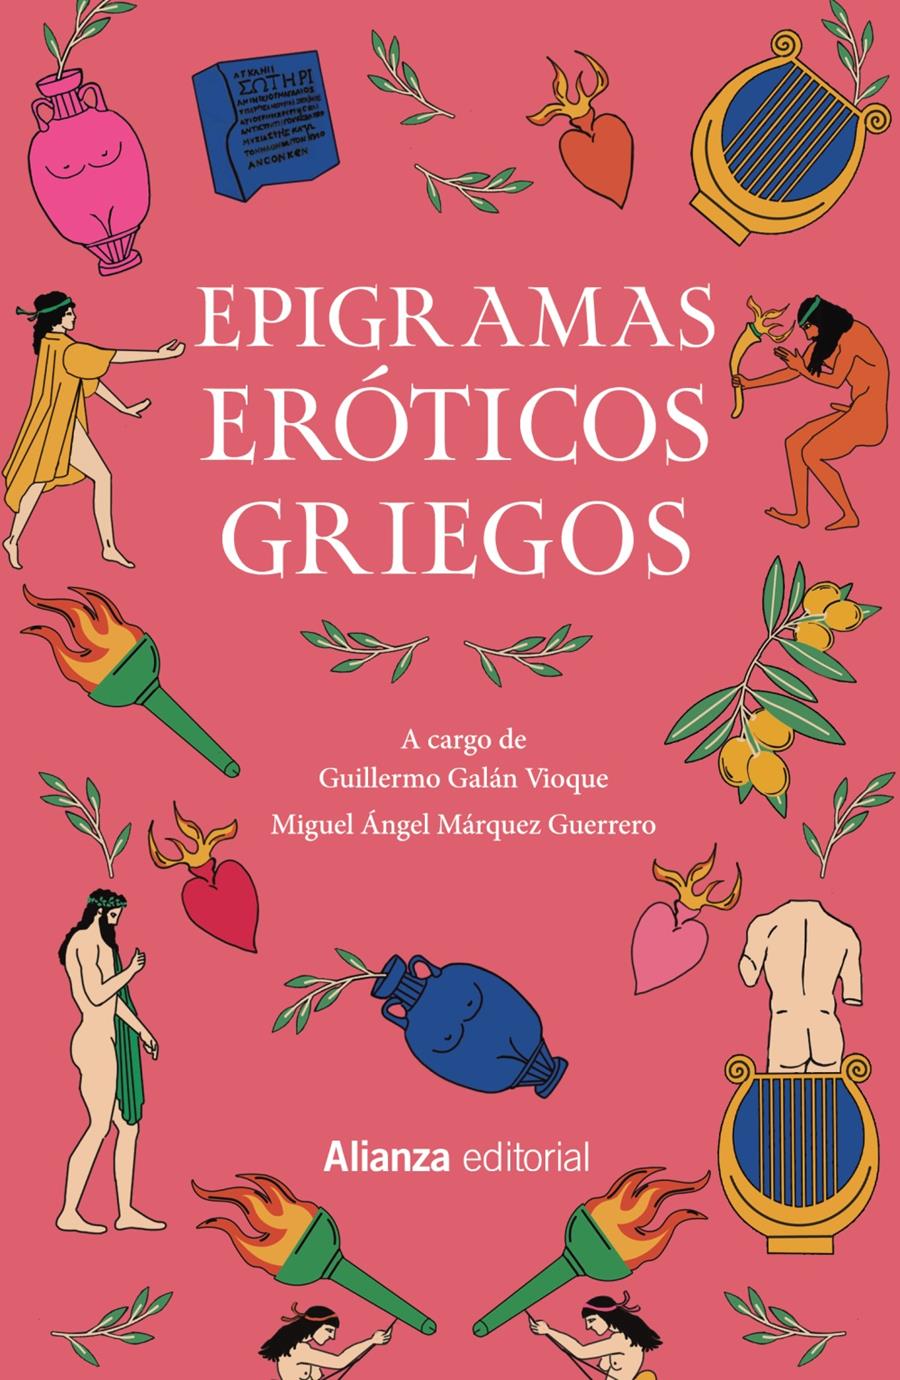 Epigramas eróticos griegos | Anónimo | Cooperativa autogestionària